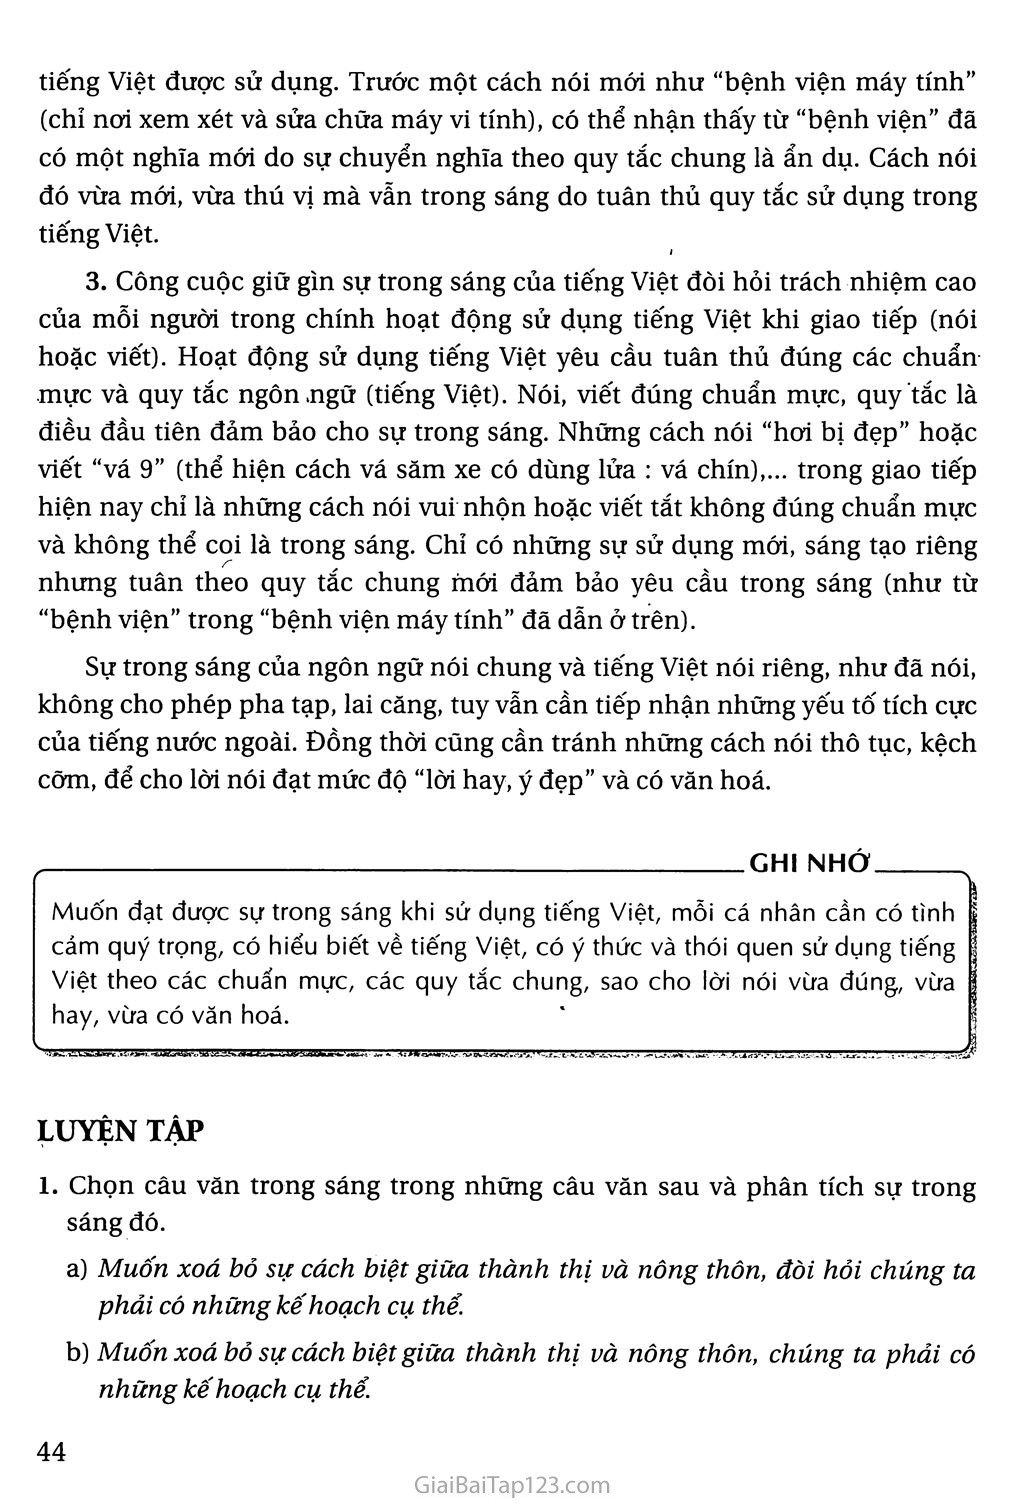 Giữ gìn sự trong sáng của Tiếng Việt (tiếp theo) trang 2